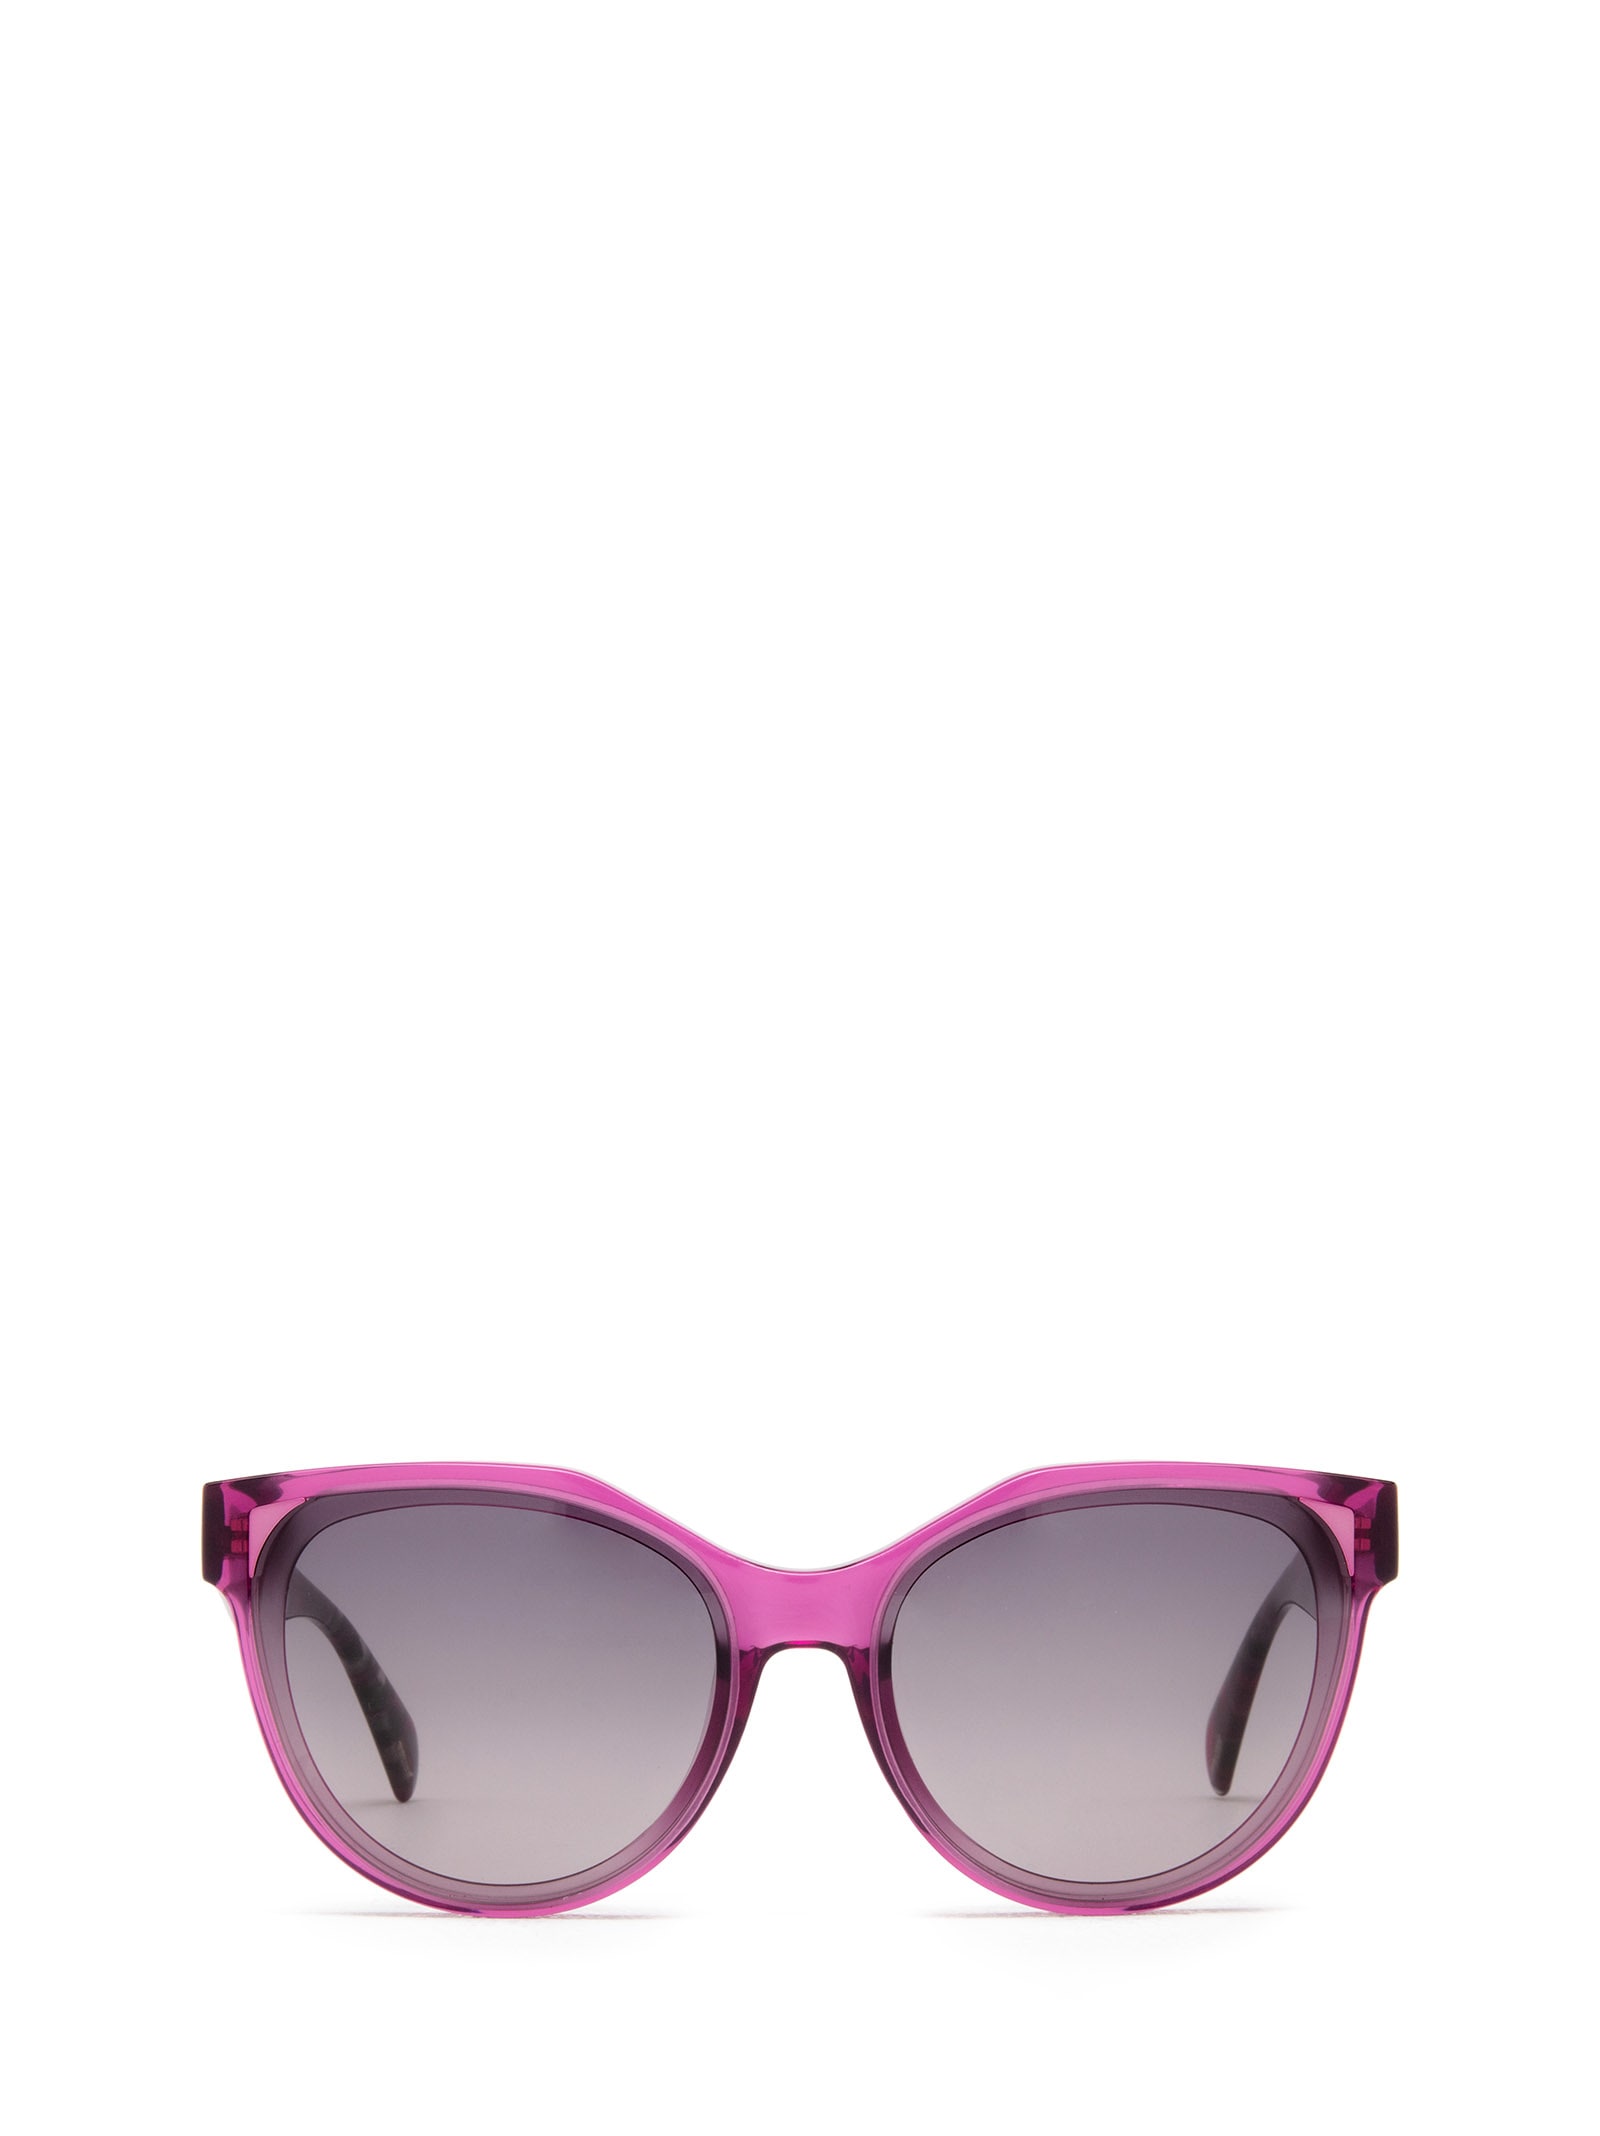 Splc22e Transparent Pink Sunglasses